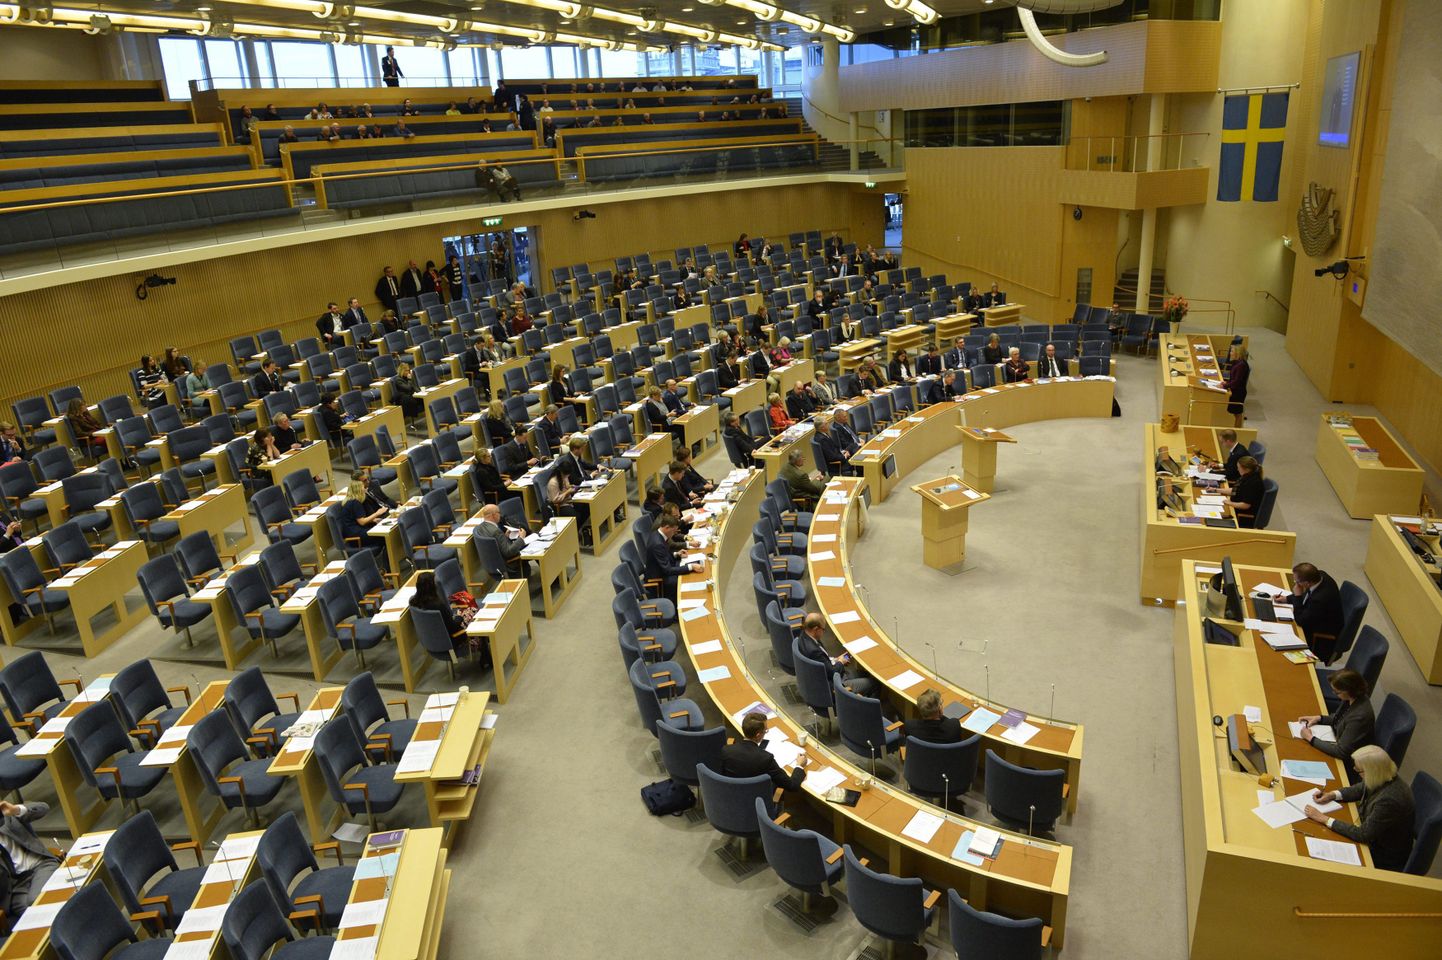 Üldvaade Rootsi parlamendi (Riksdag) istungitesaali.